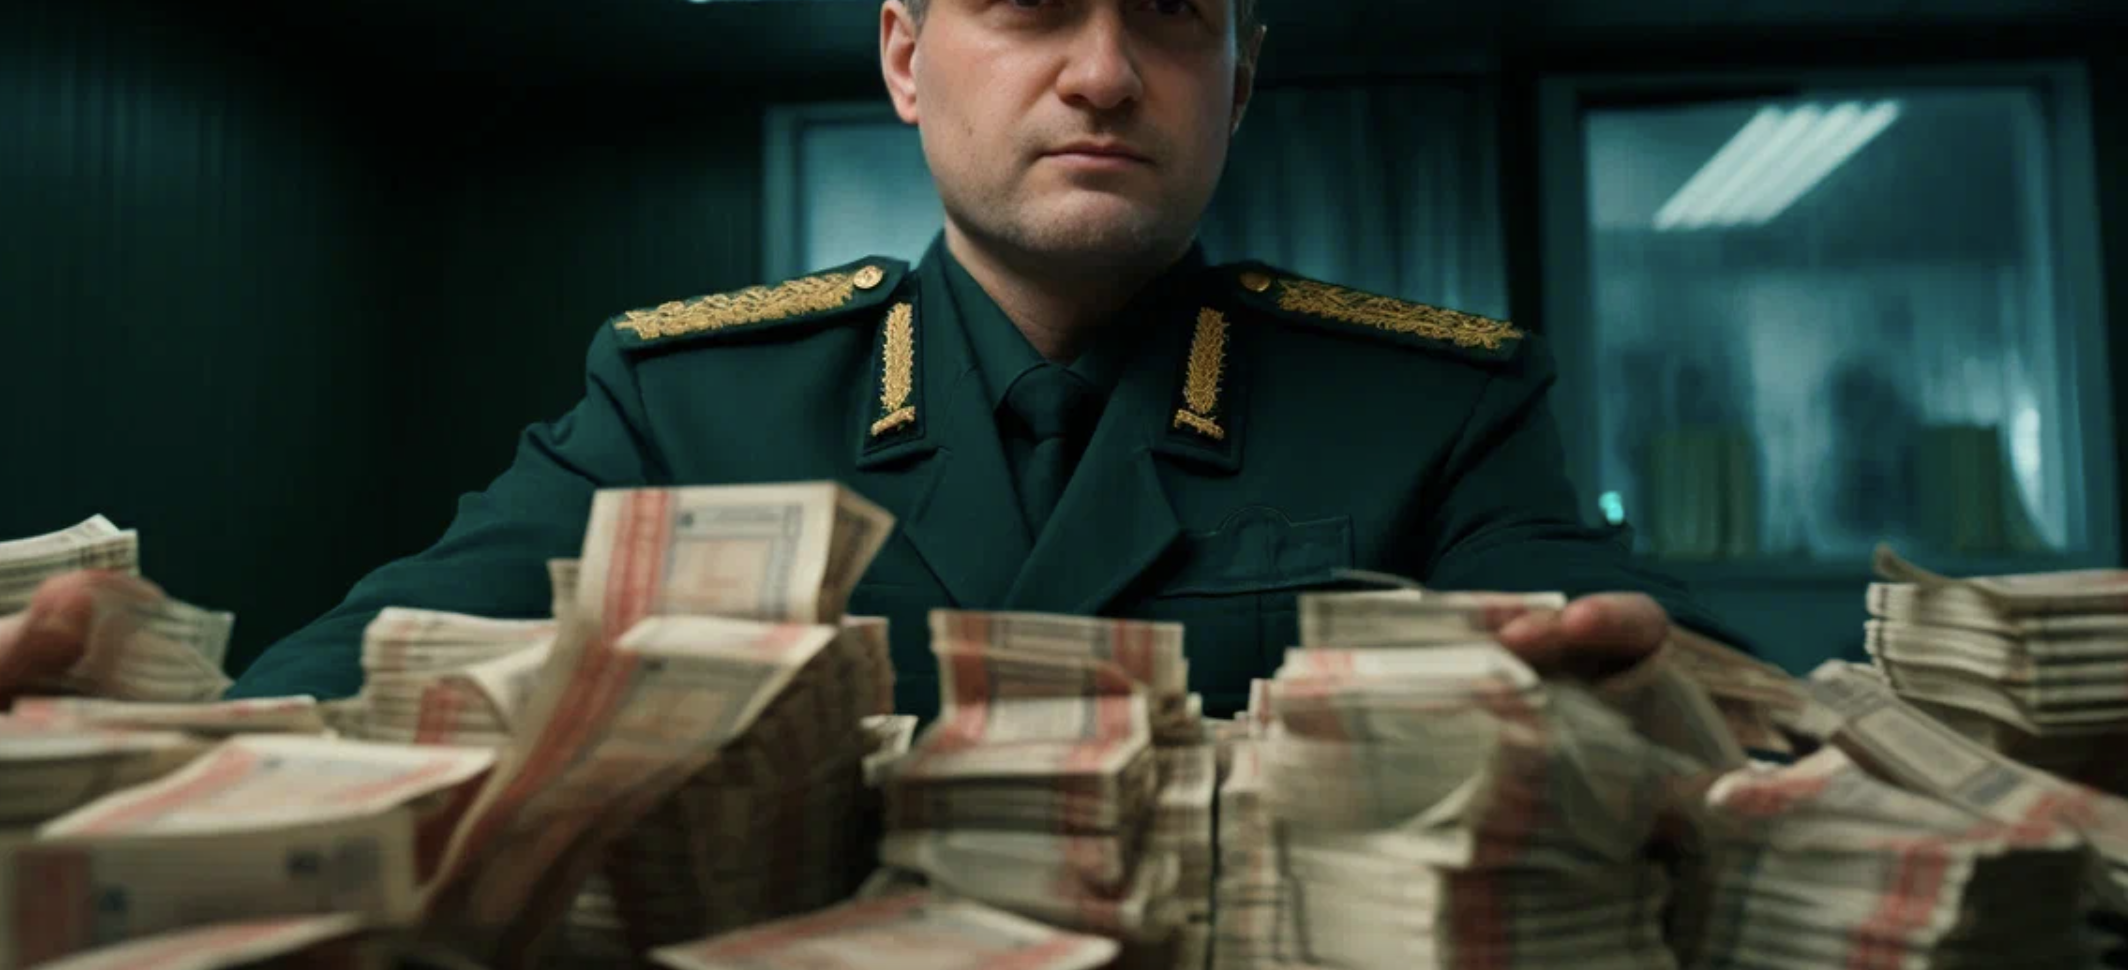 Деньги, госконтракты и шантаж: Что известно о деле экс-министра Клебанова, которому грозит 15 лет тюрьмы